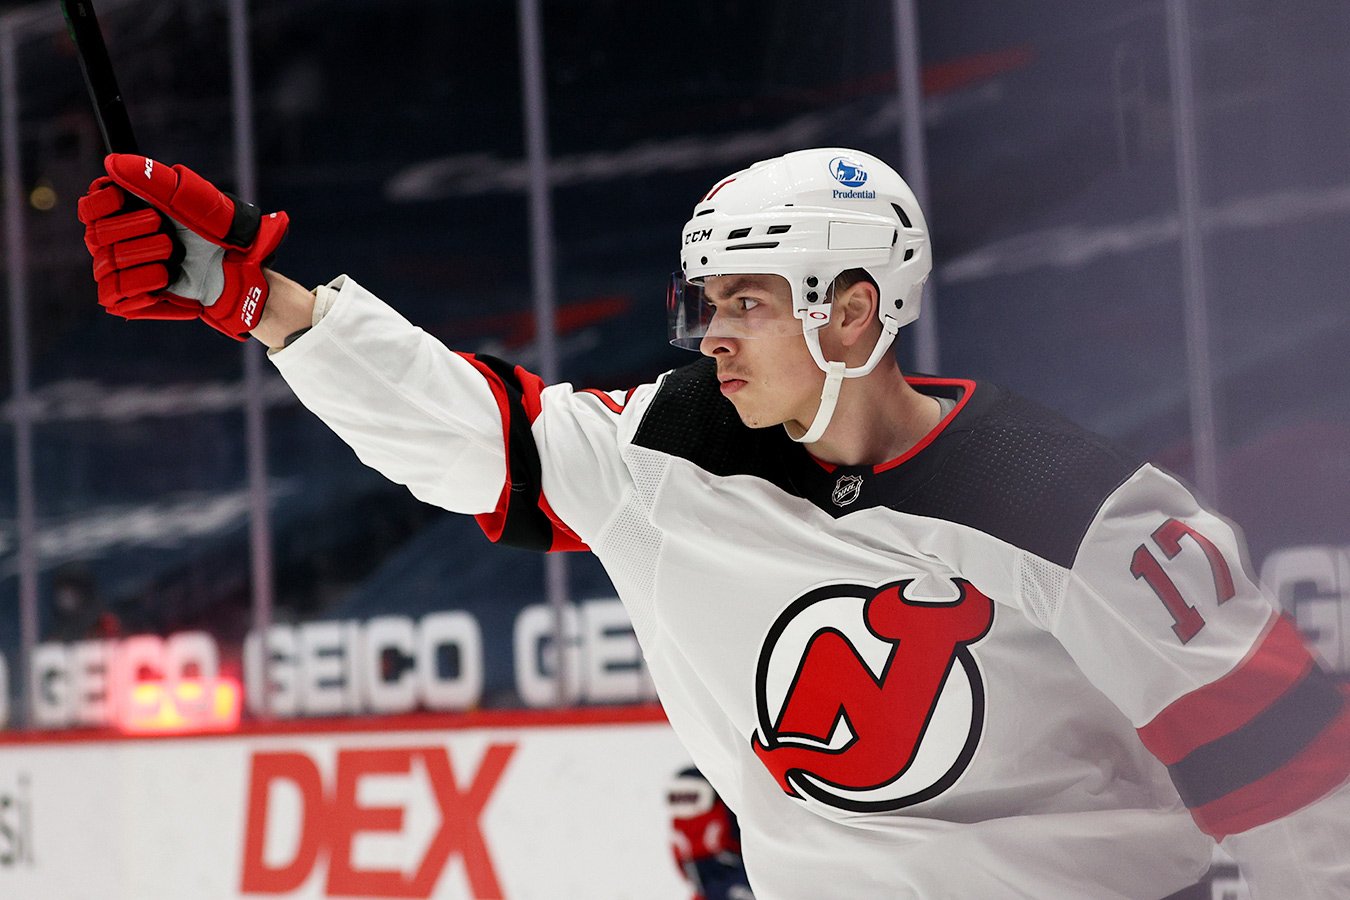 Шарангович — третий белорус, набравший 4 очка за одну игру в НХЛ